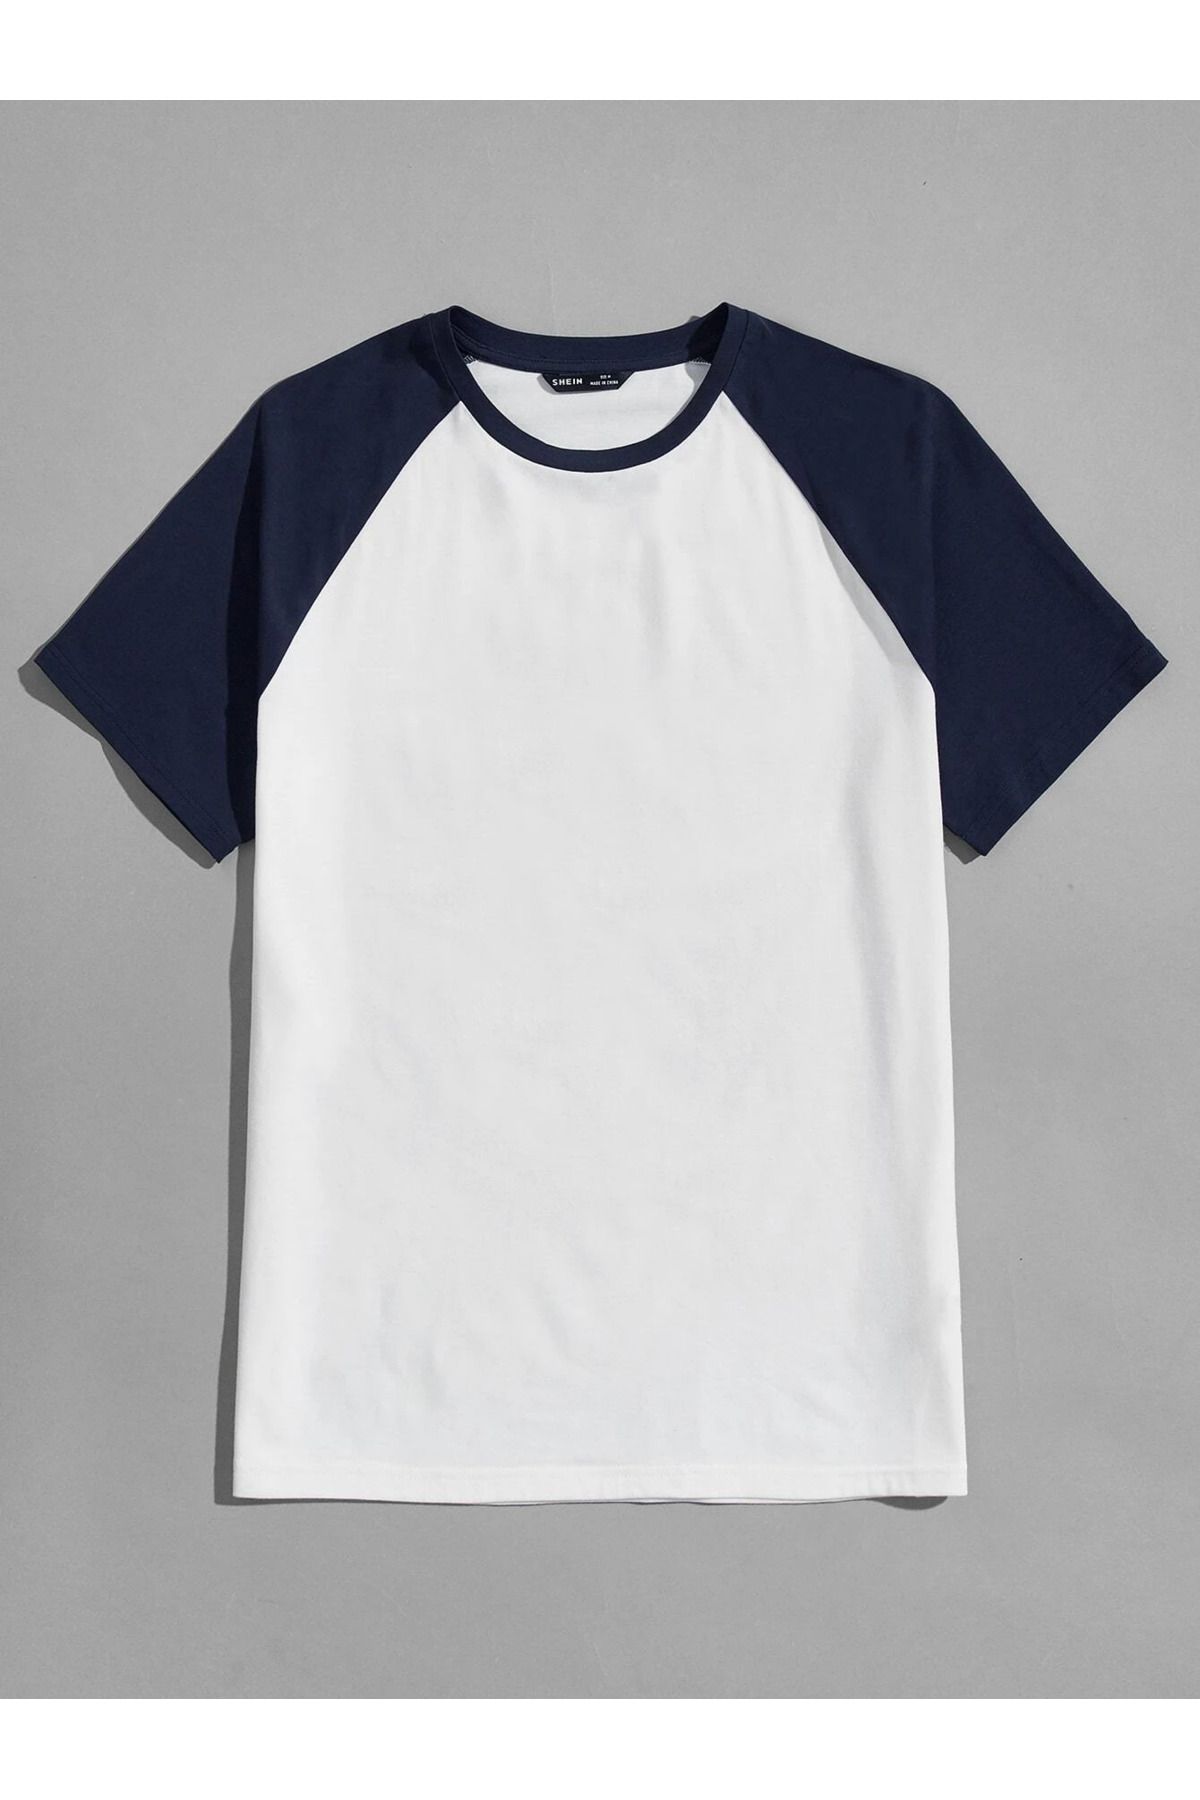 DUBU BUTİK Oversize Lacivert Beyaz Baskısız T-shirt - Reglan Kol Unisex Rahat Kalıp